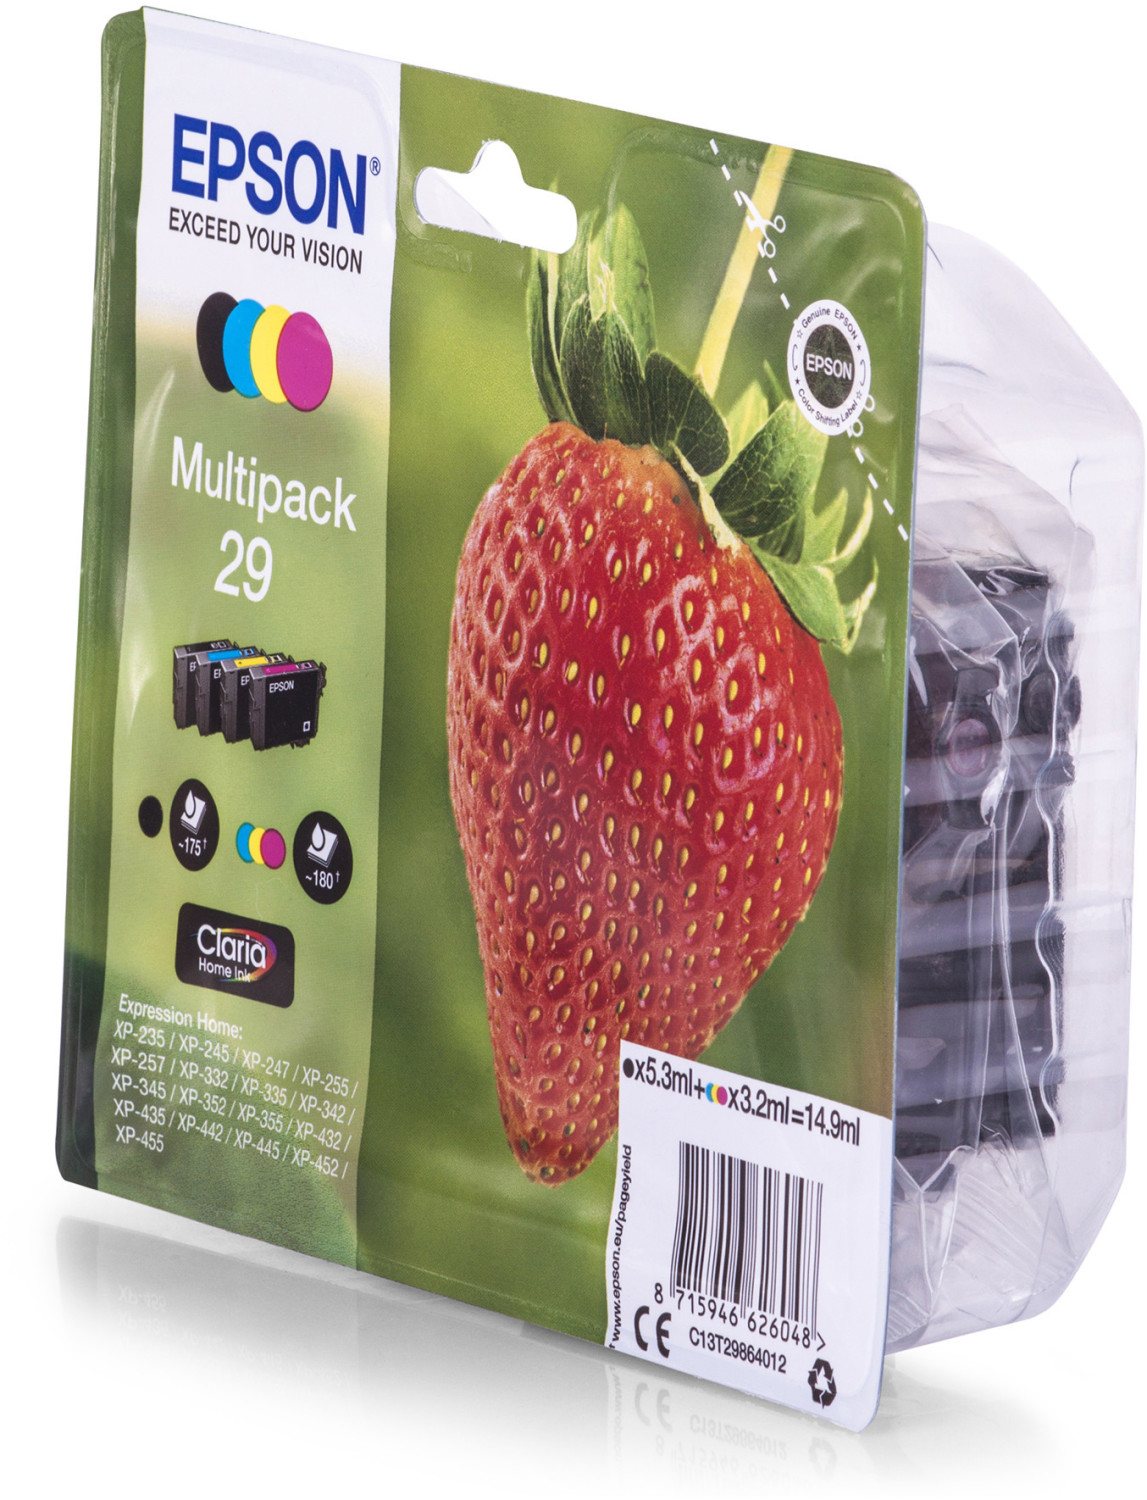 Cartuccia Epson 604 ananas multipack inchiostro colori originale